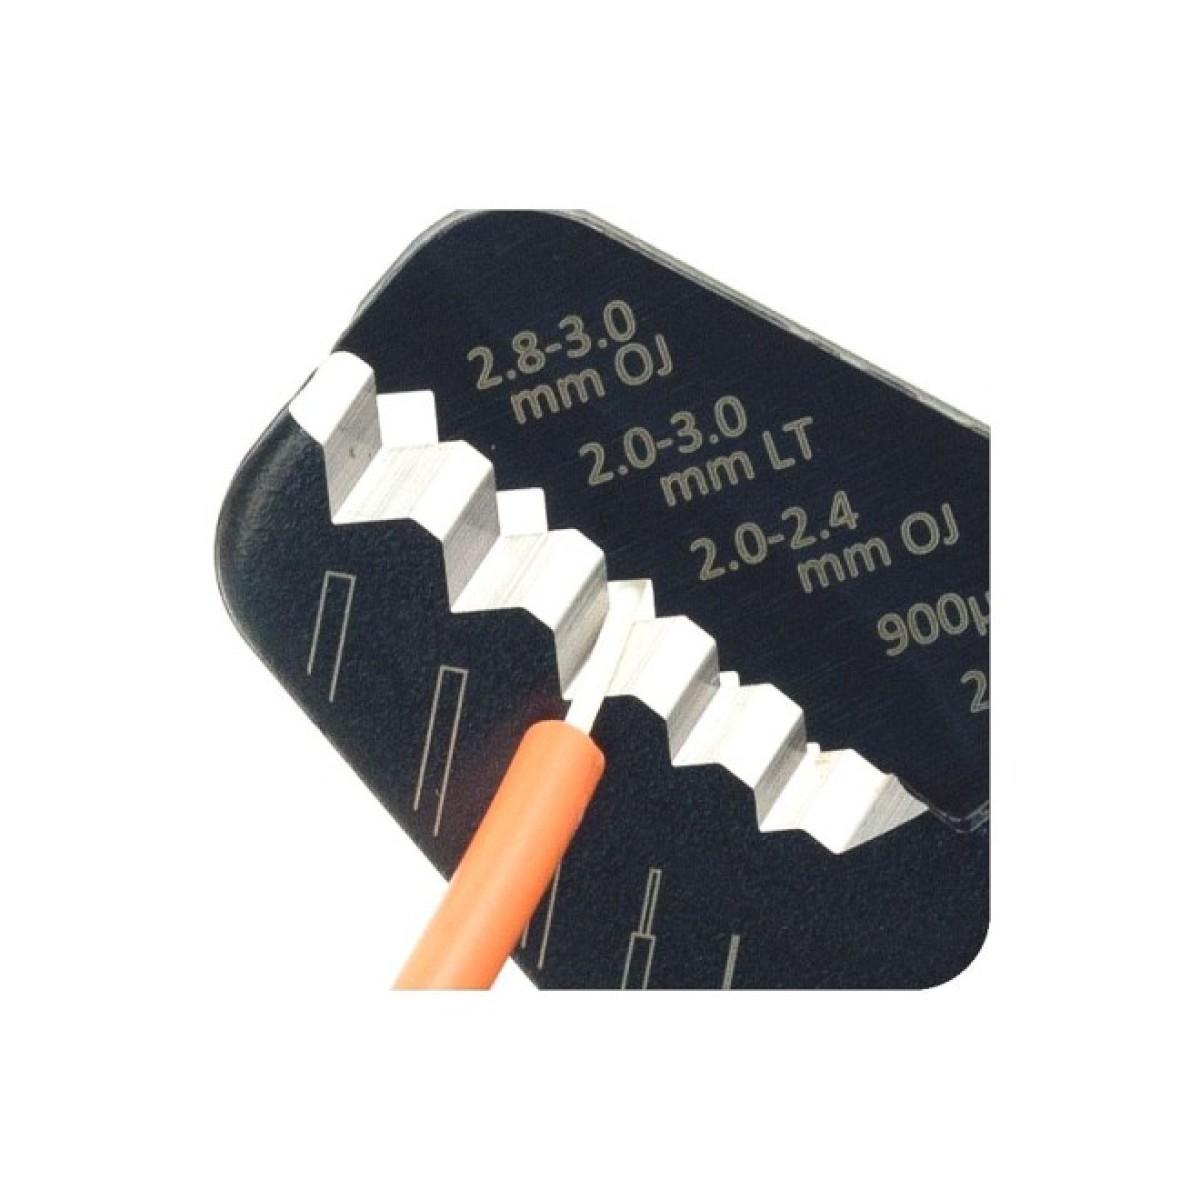 Інструмент (stripper) для зачистки оптичних волокон, 250μm, 900μm, оболонки та туби 2.0-3.0 мм, Hanlong 98_98.jpg - фото 4